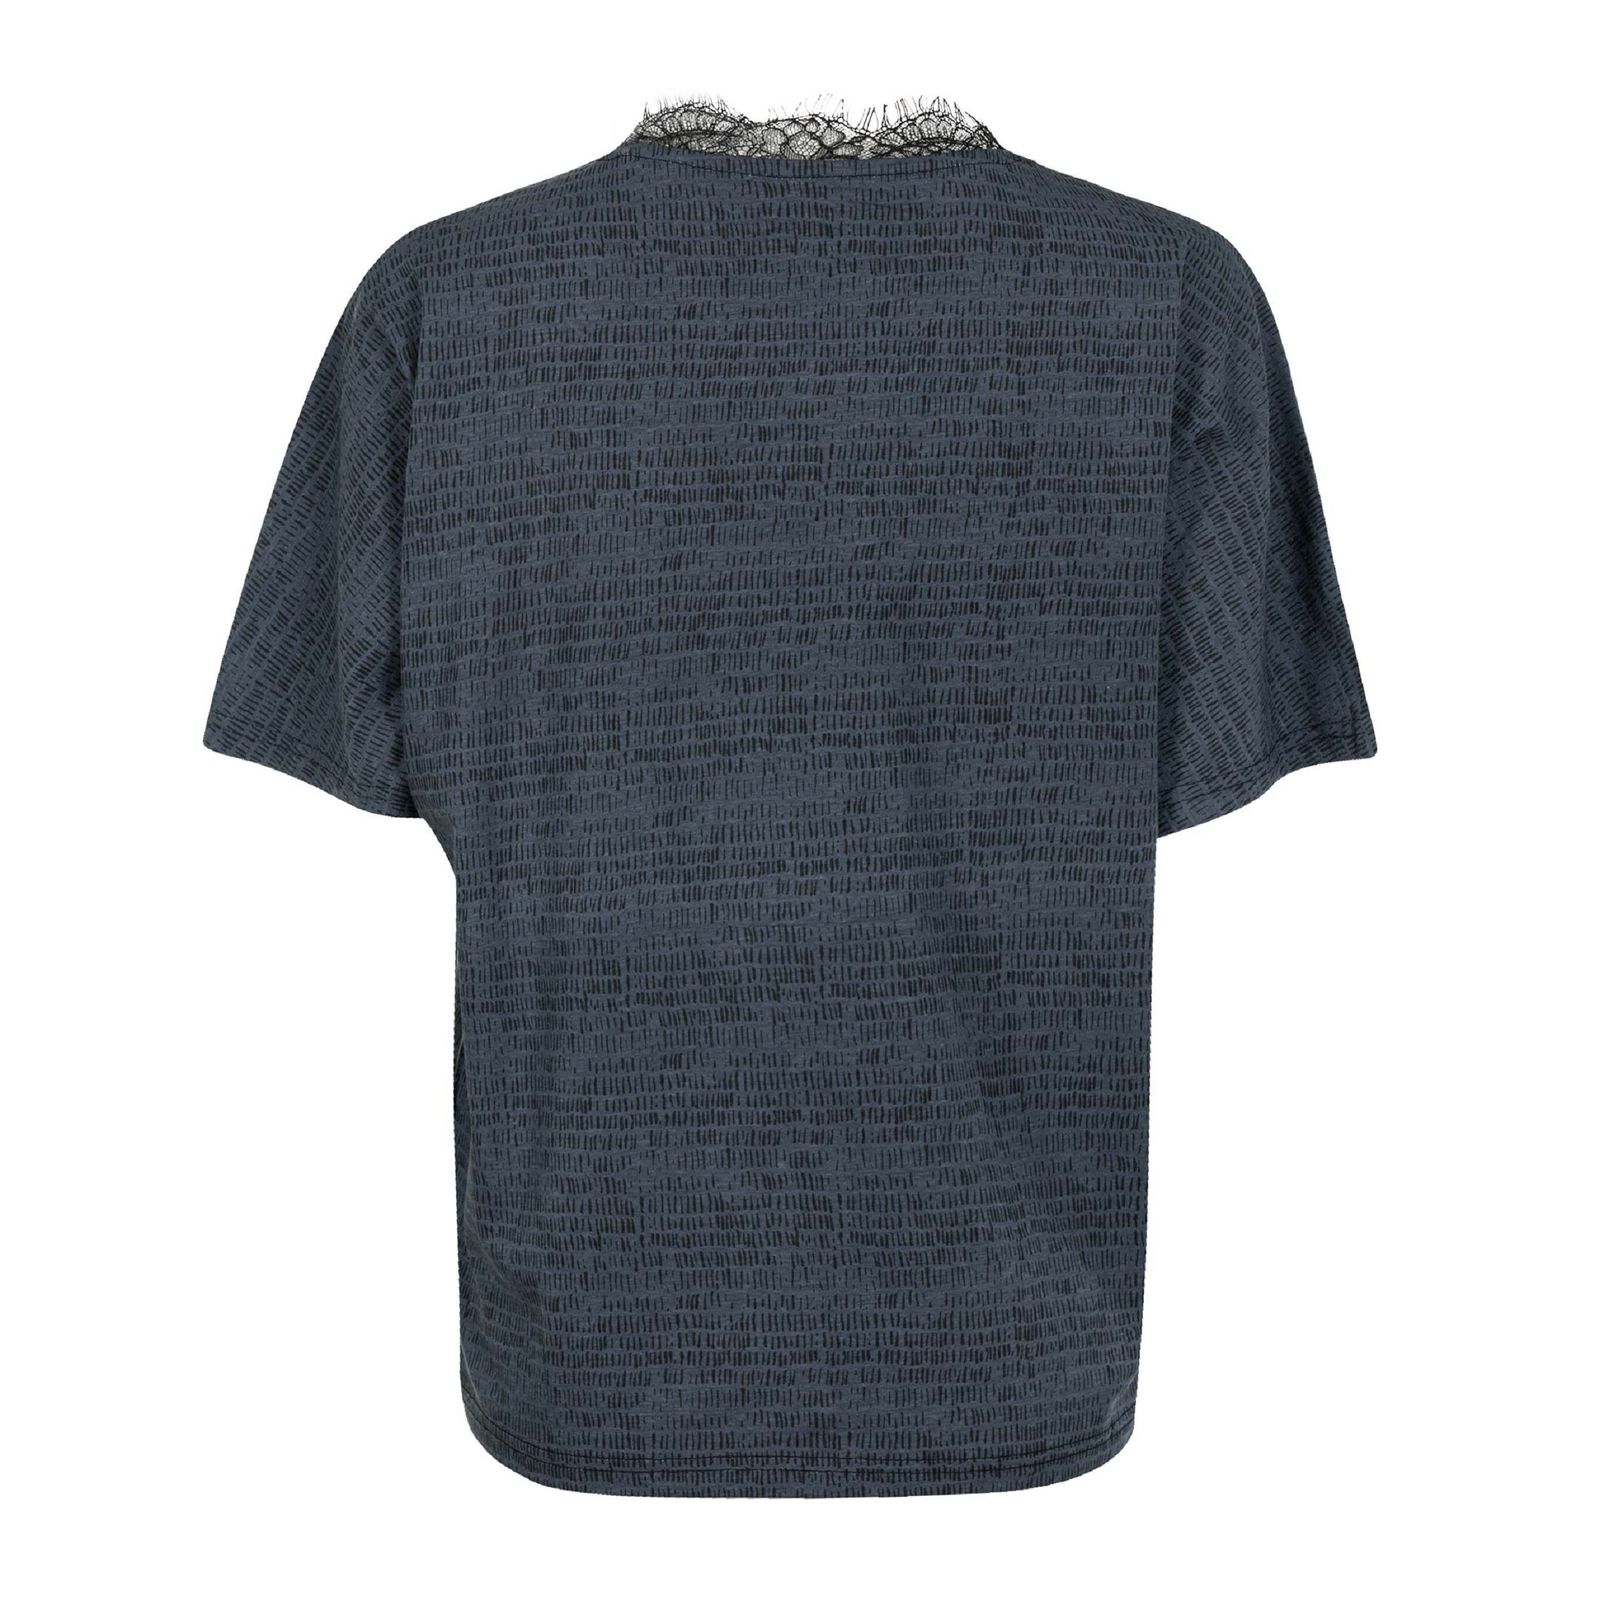 تی شرت آستین کوتاه زنانه جوتی جینز مدل یقه هفت کد 1551215 رنگ طوسی تیره -  - 2